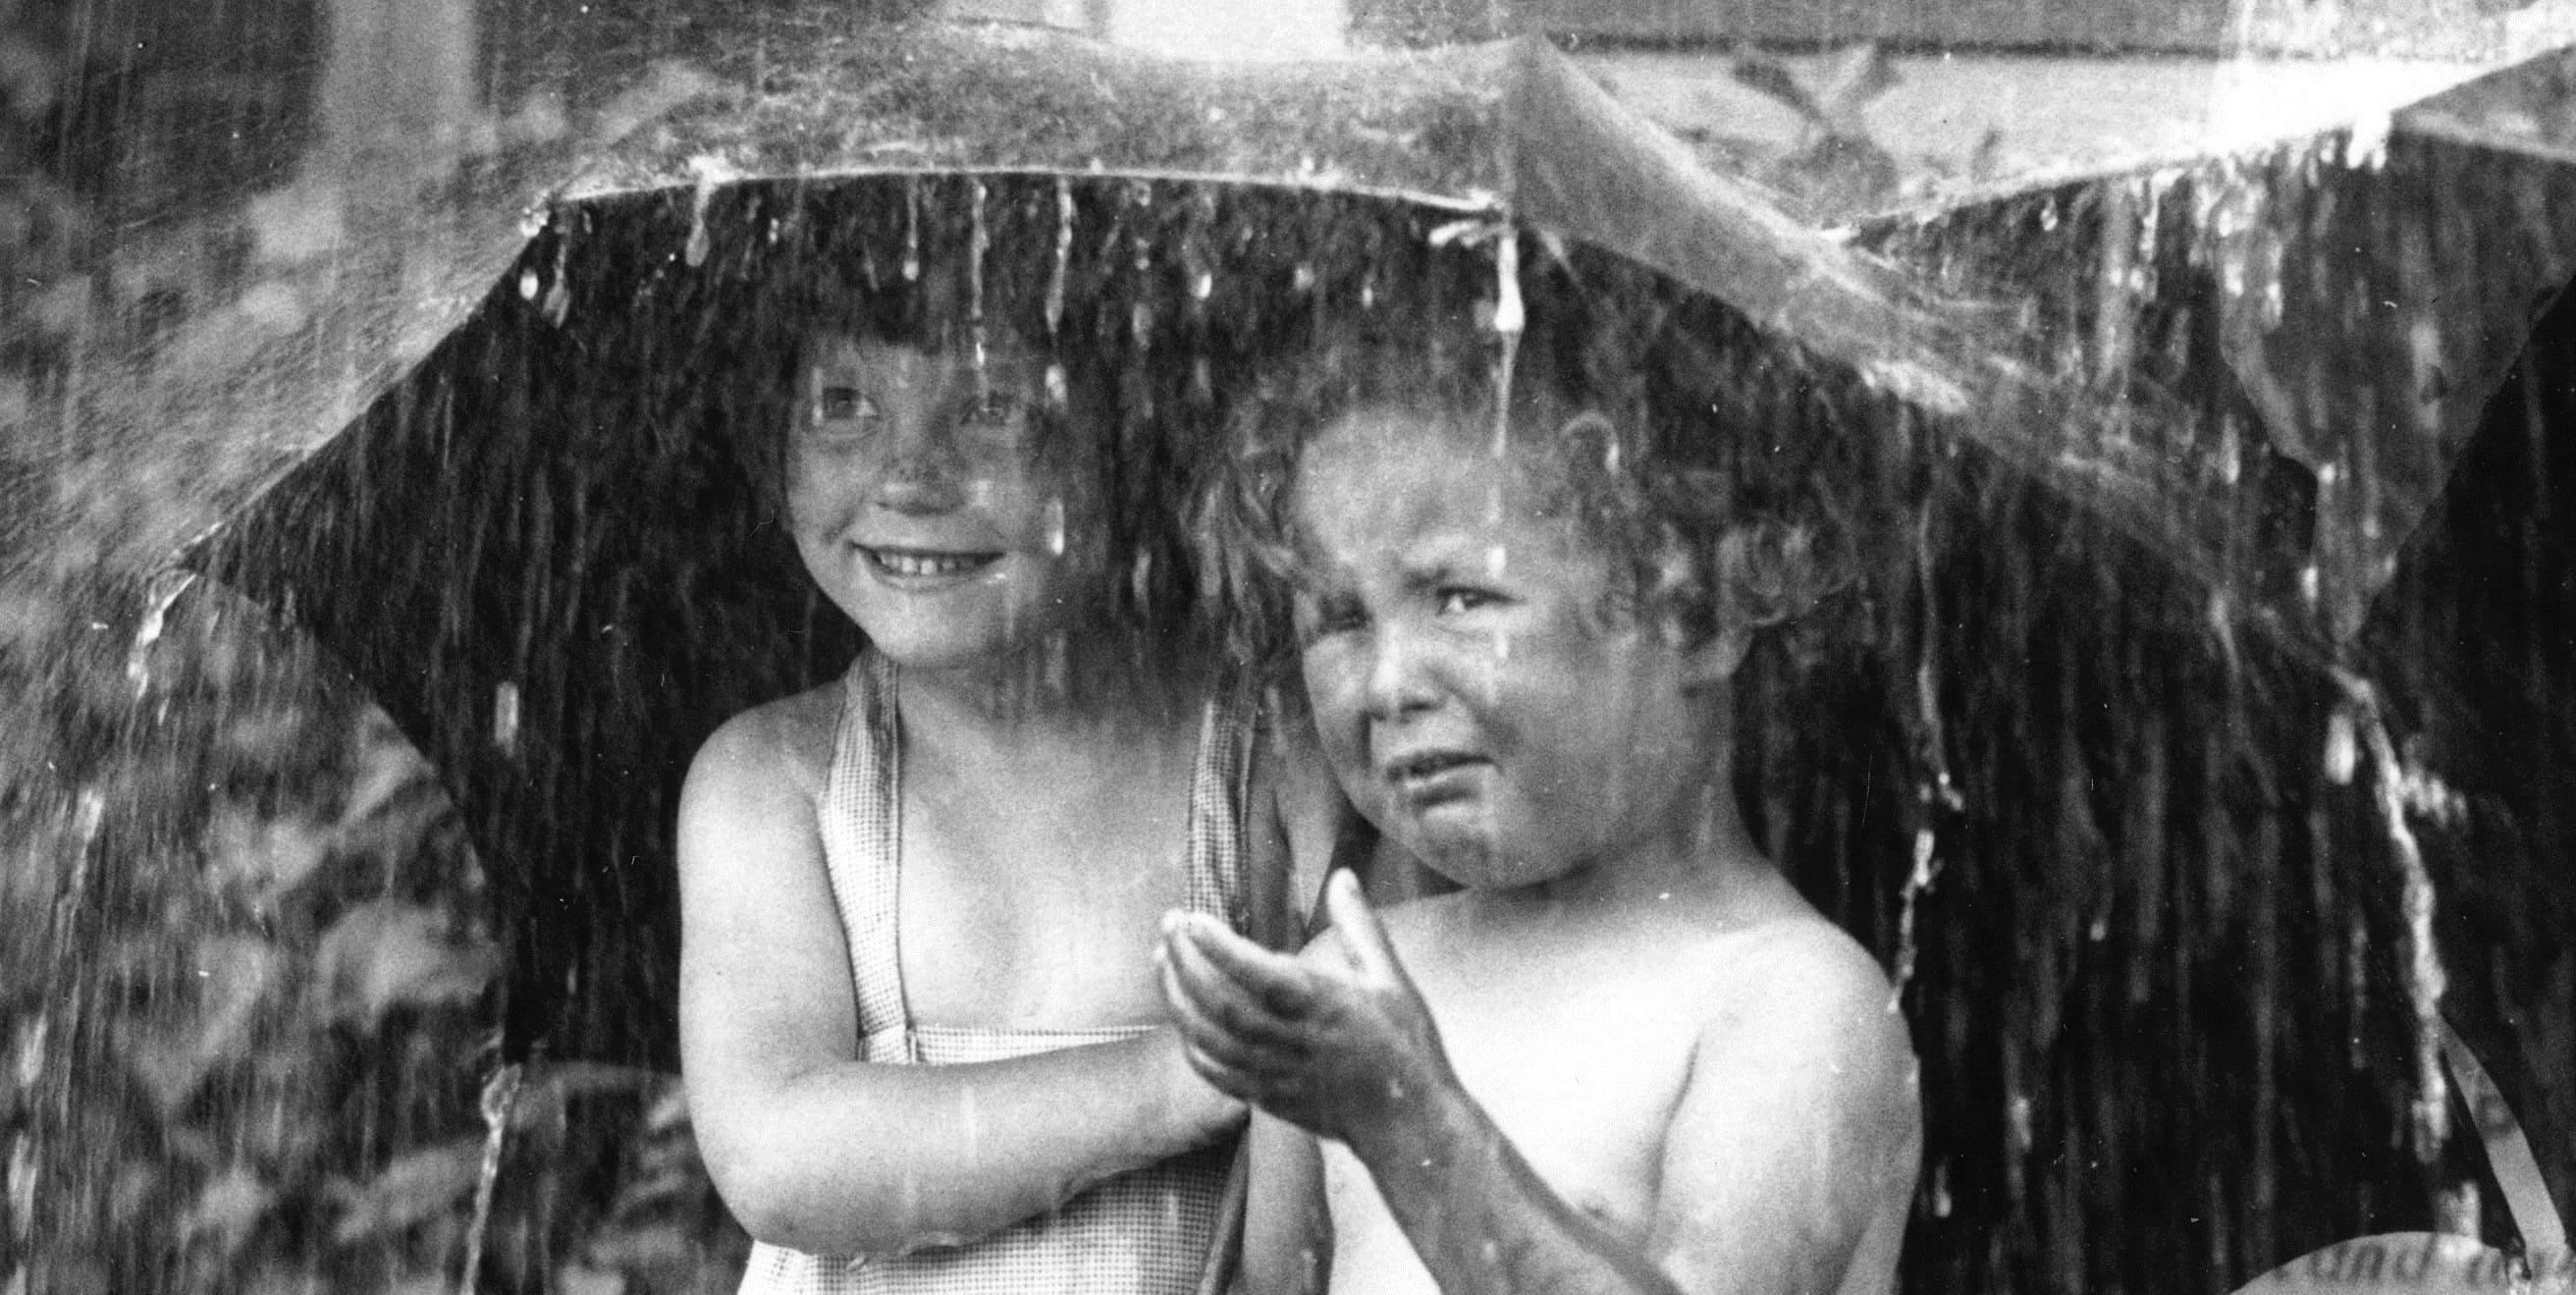 Старые видят далеко. Два ребенка под дождем. Двое детей под дождем. Два взгляда на жизнь девочки под дождем. Два взгляда на мир девочки под зонтом.